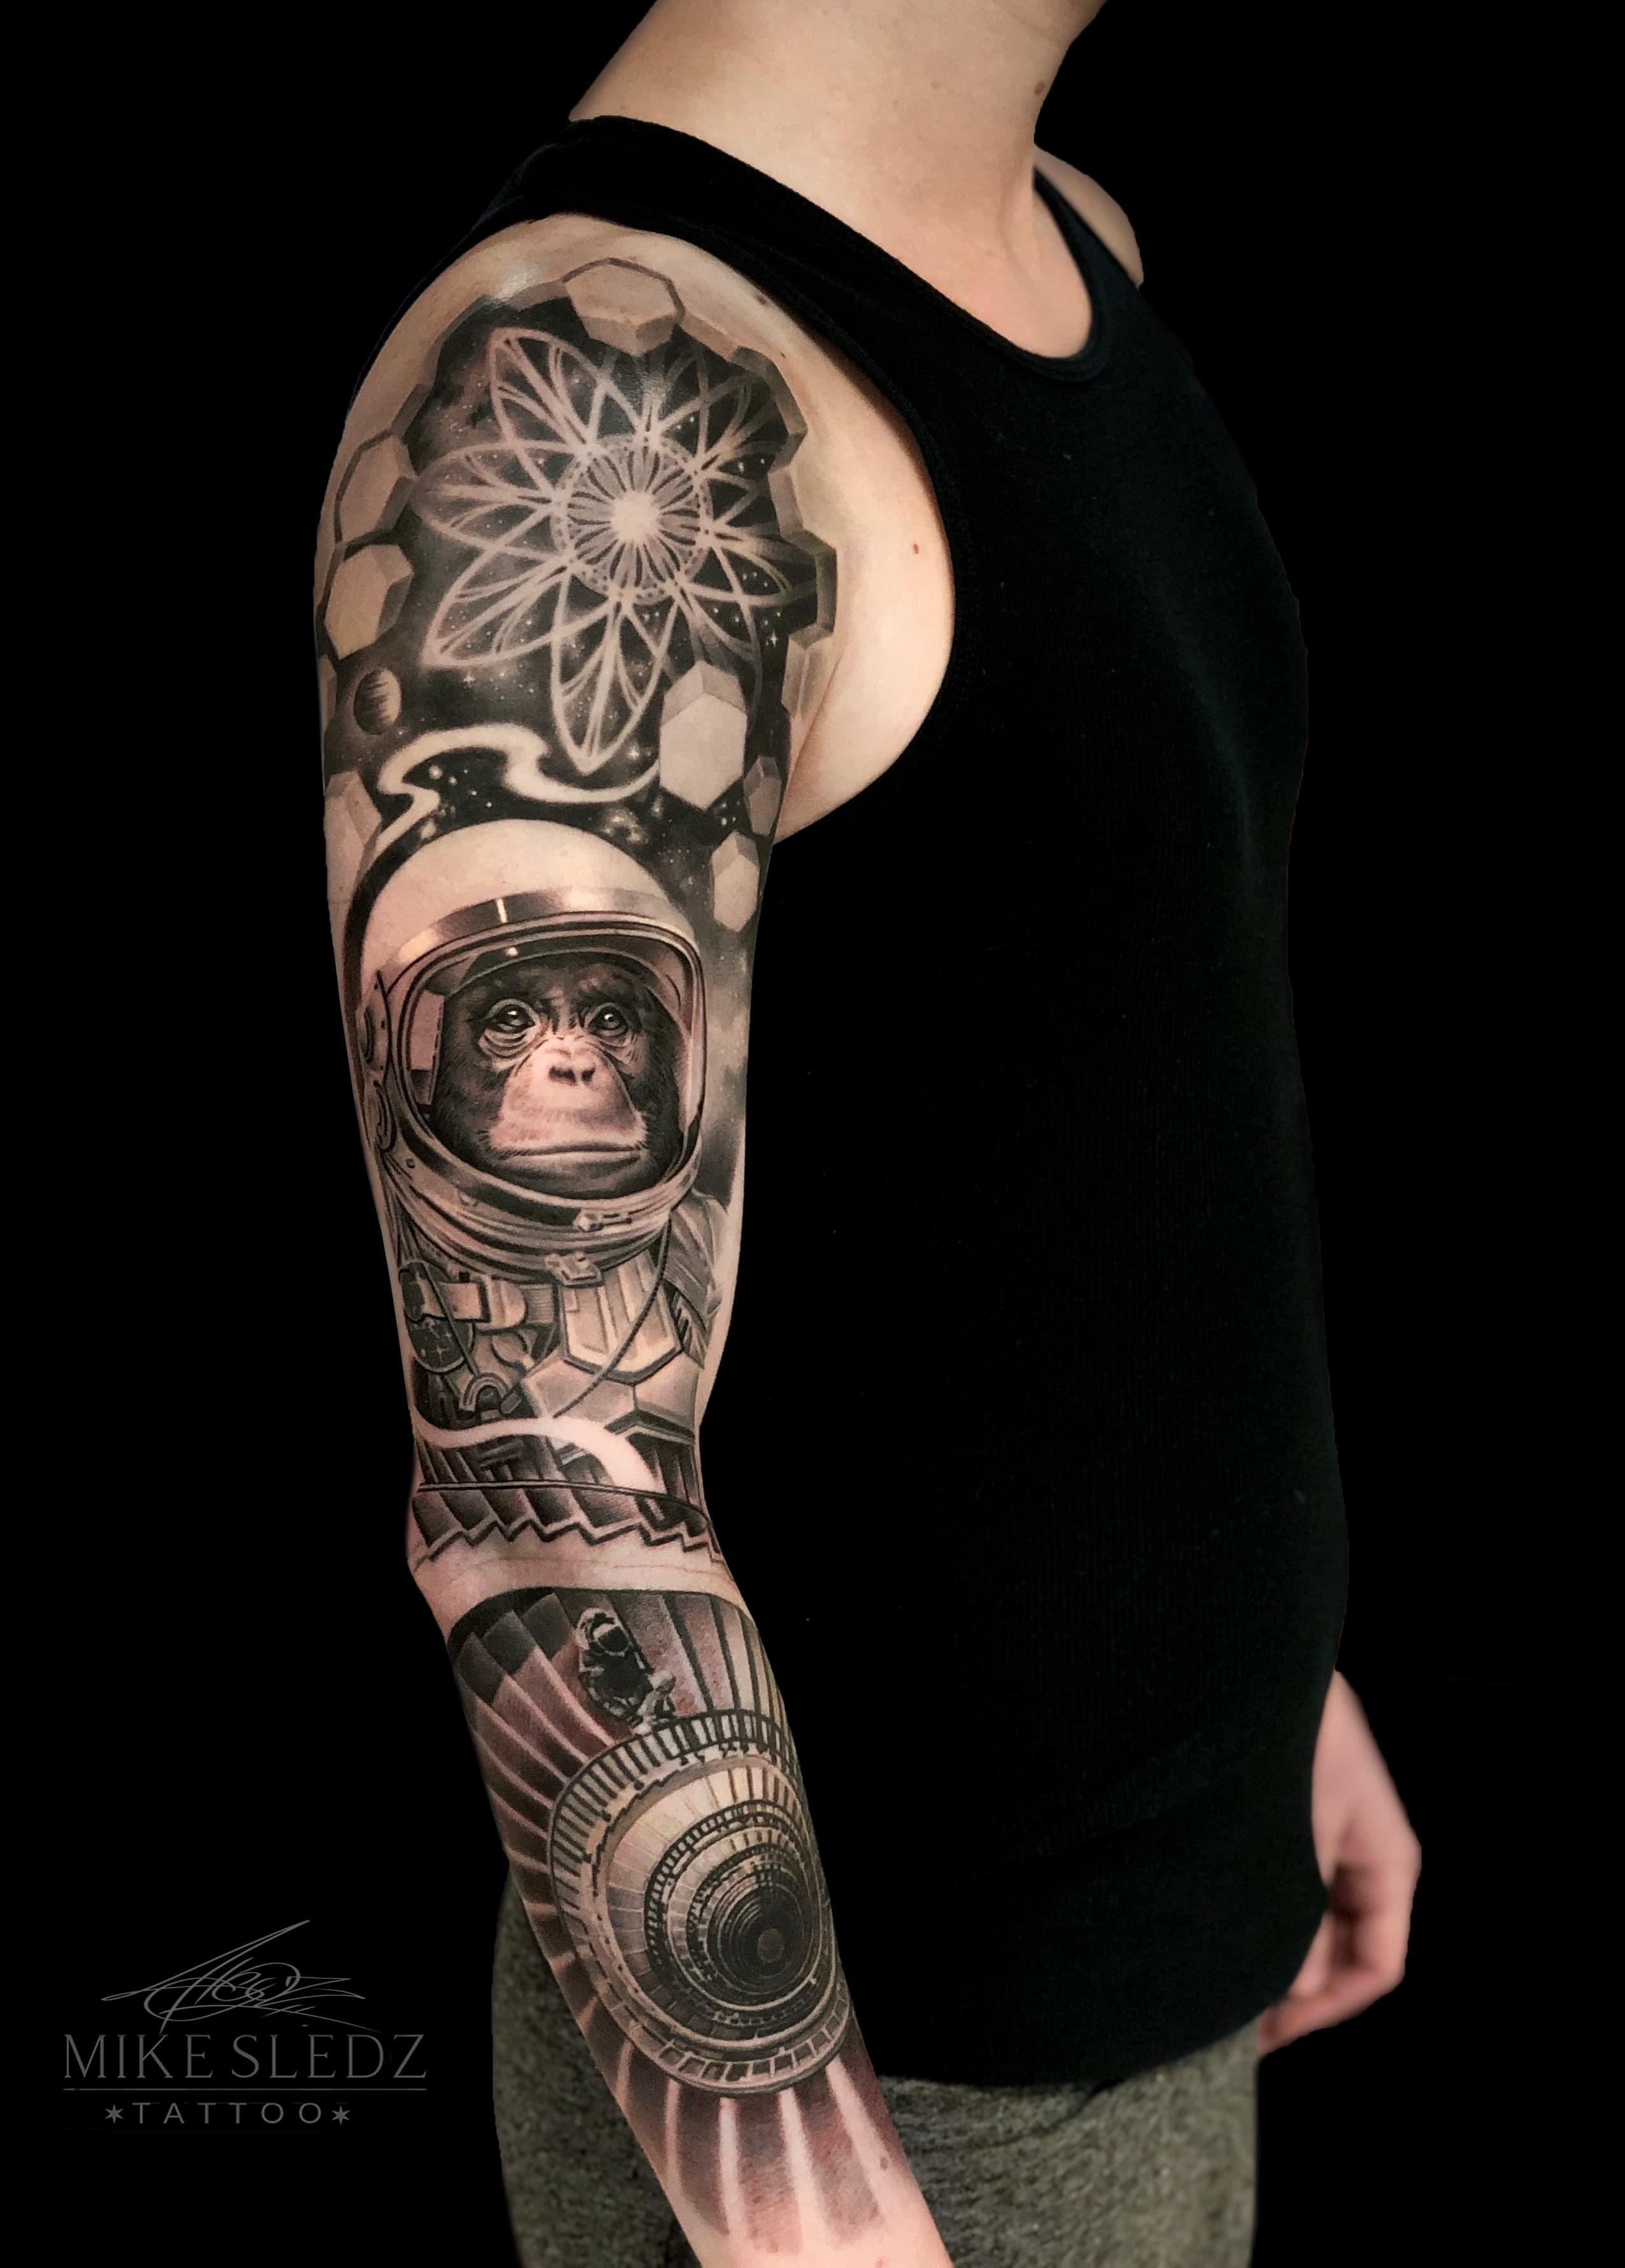 Mike Wazowski tattoo by Kozo Tattoo  Post 31402  Tattoos Movie tattoos  Wolf tattoo design